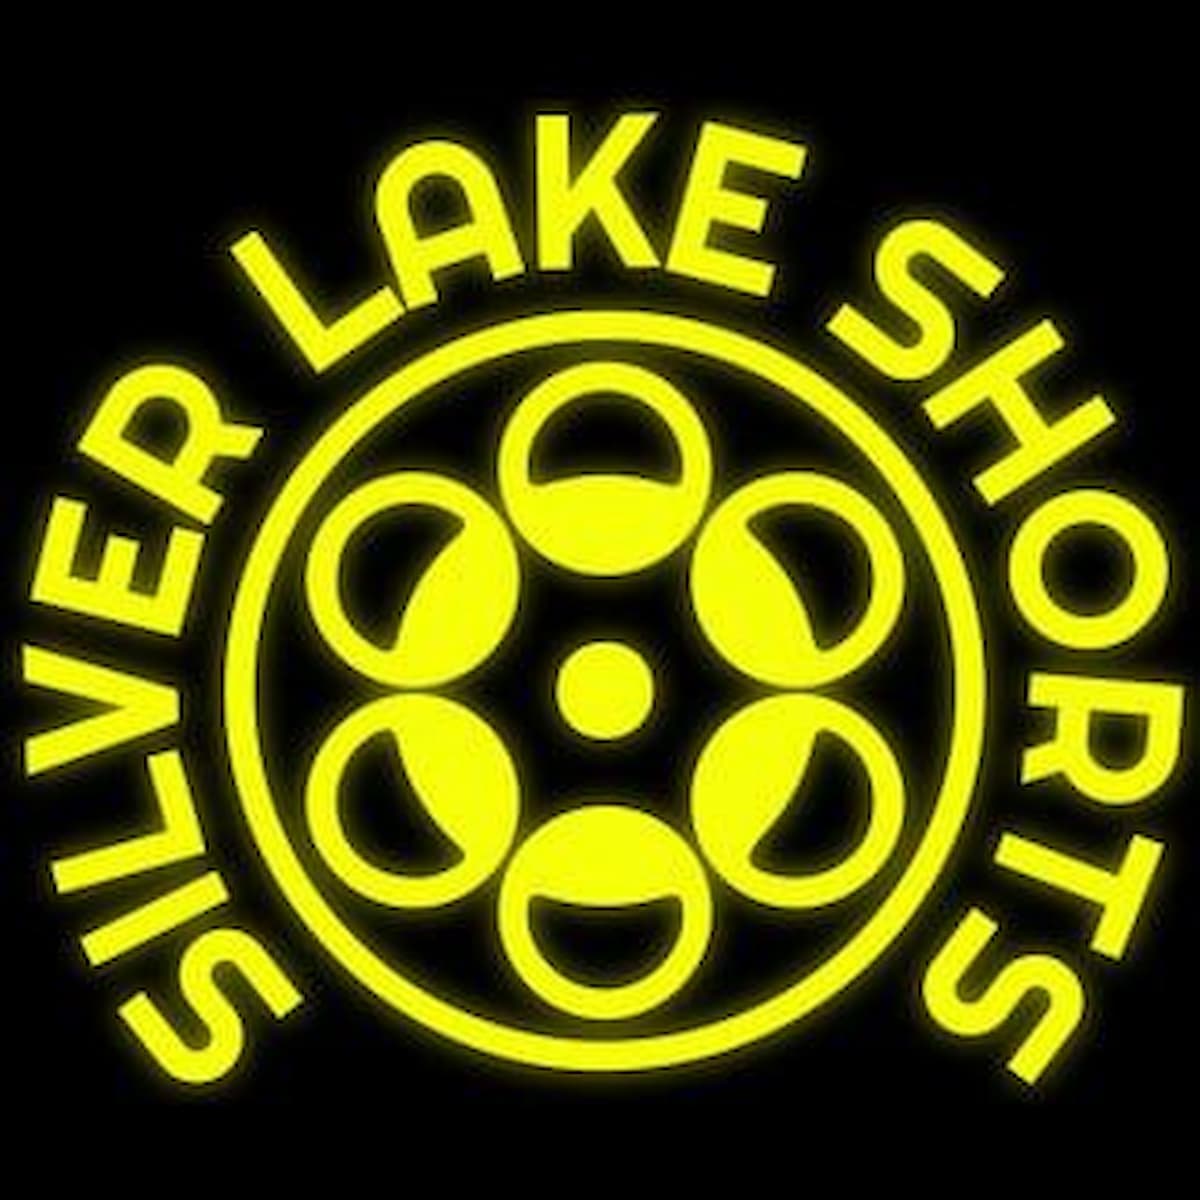 Silver Lake Shorts